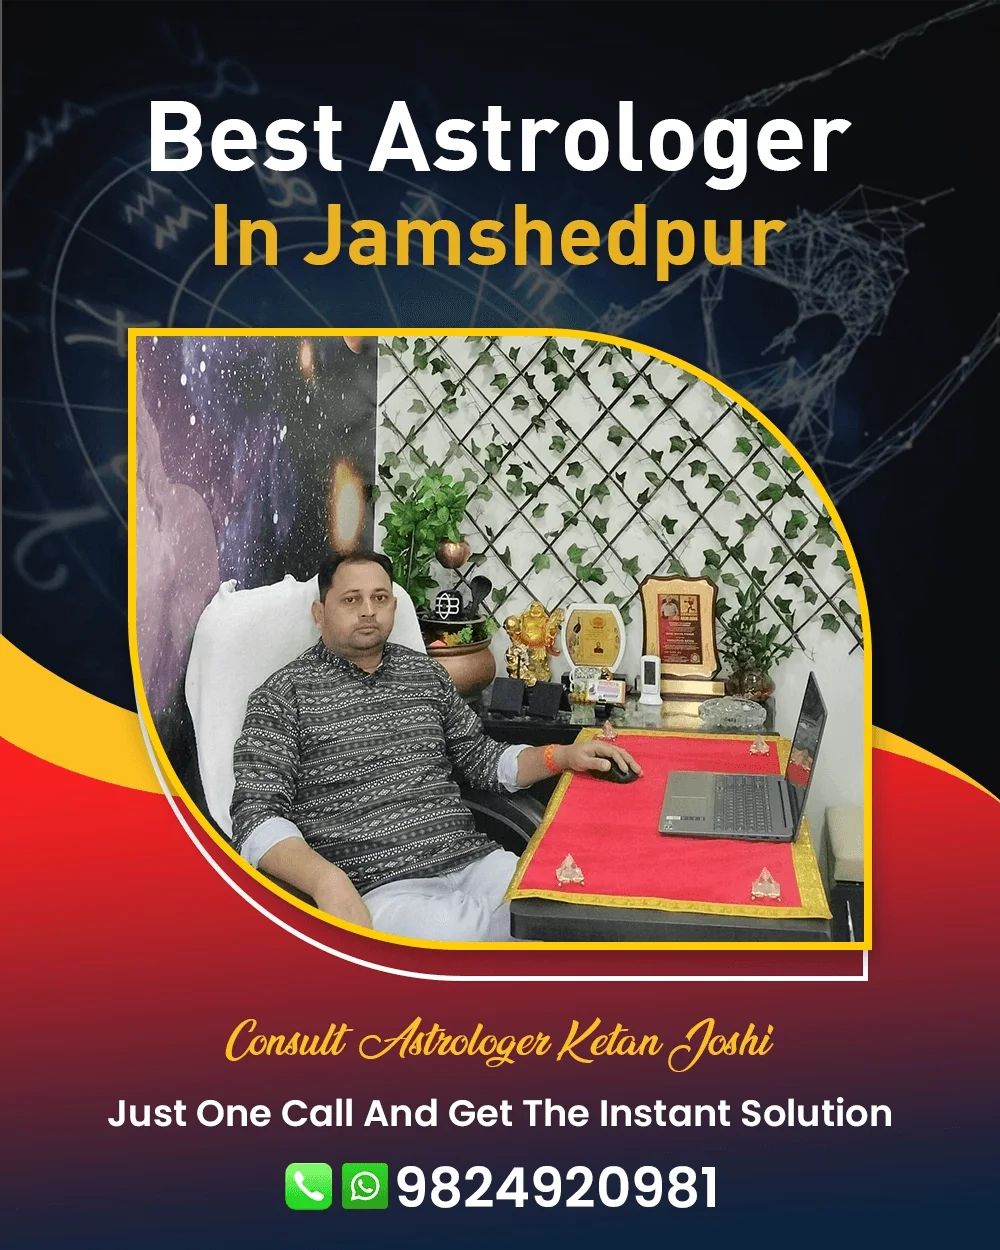 Best Astrologer In Jamshedpur